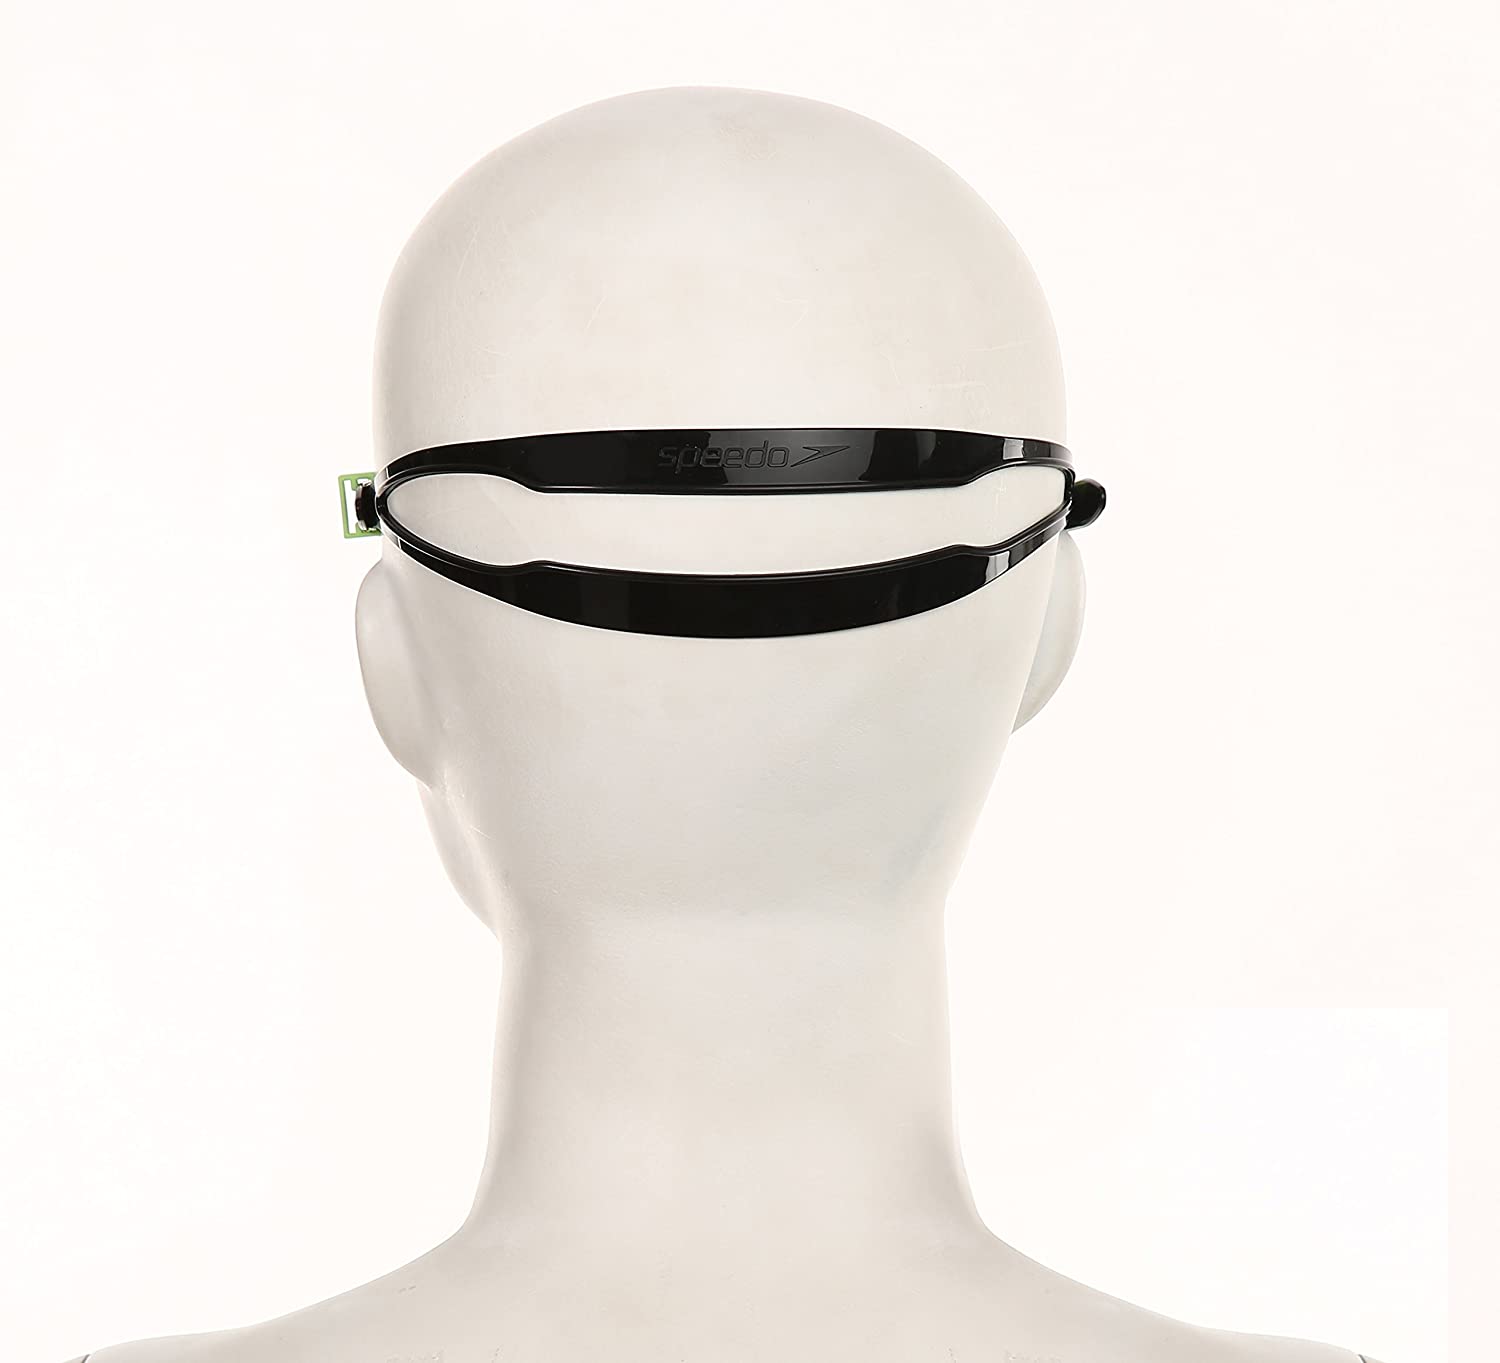 Speedo Unisex - Junior Futura Plus Junior Goggles - Best Price online Prokicksports.com